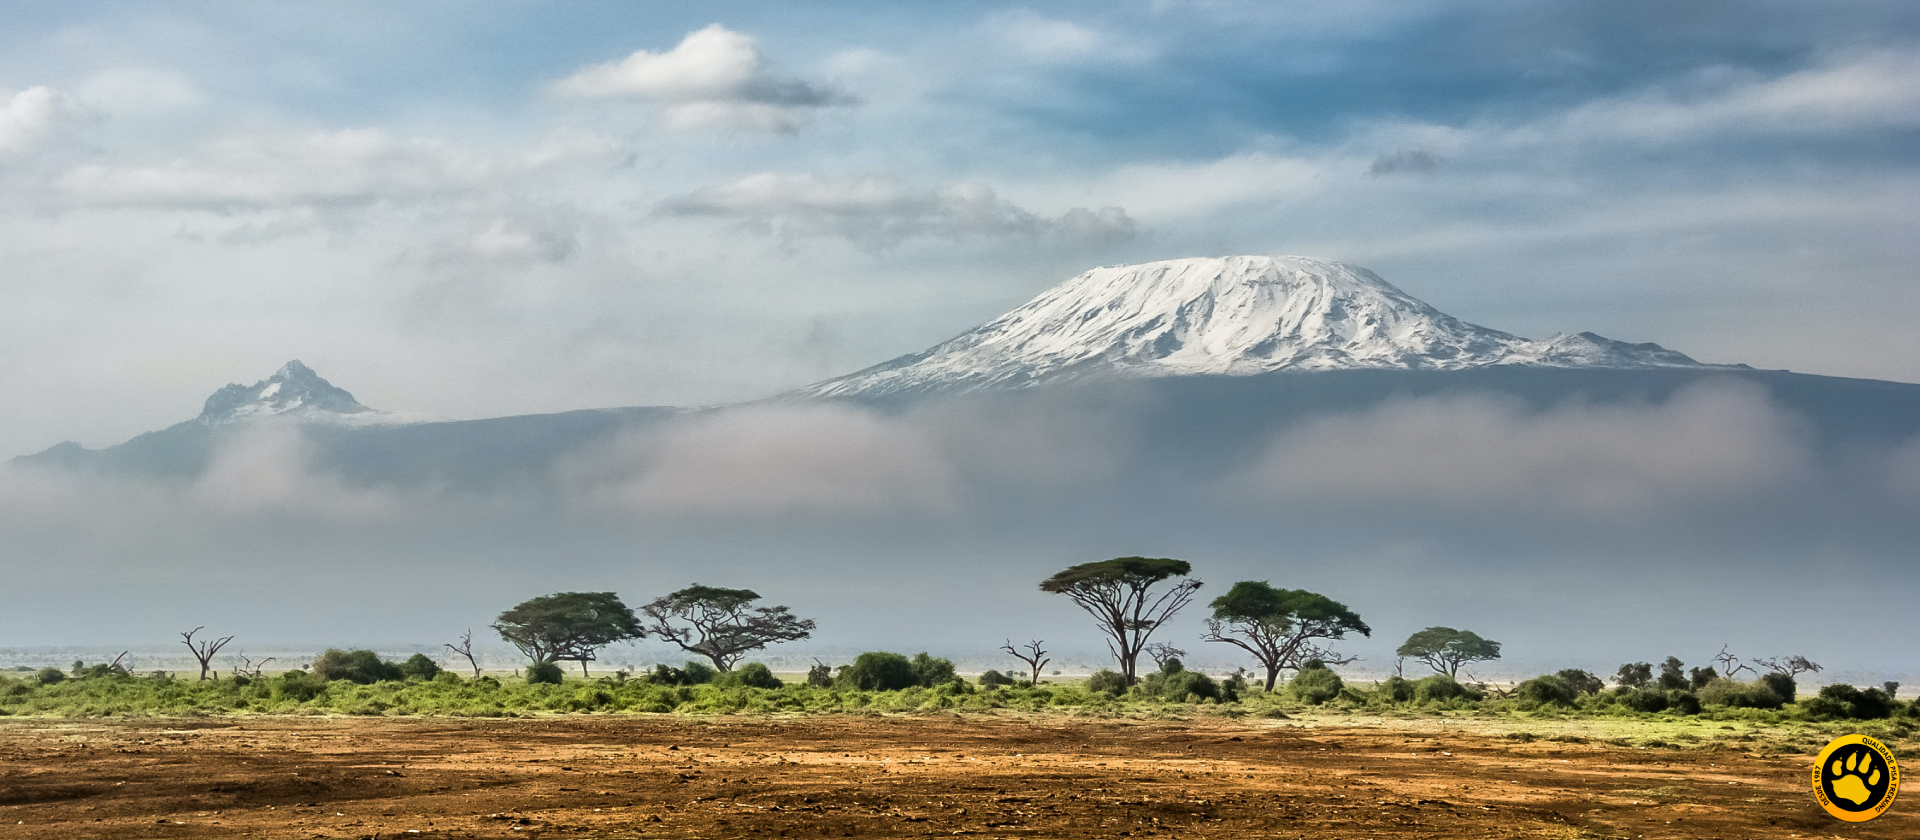 Tudo sobre a Expedição ao Kilimanjaro!